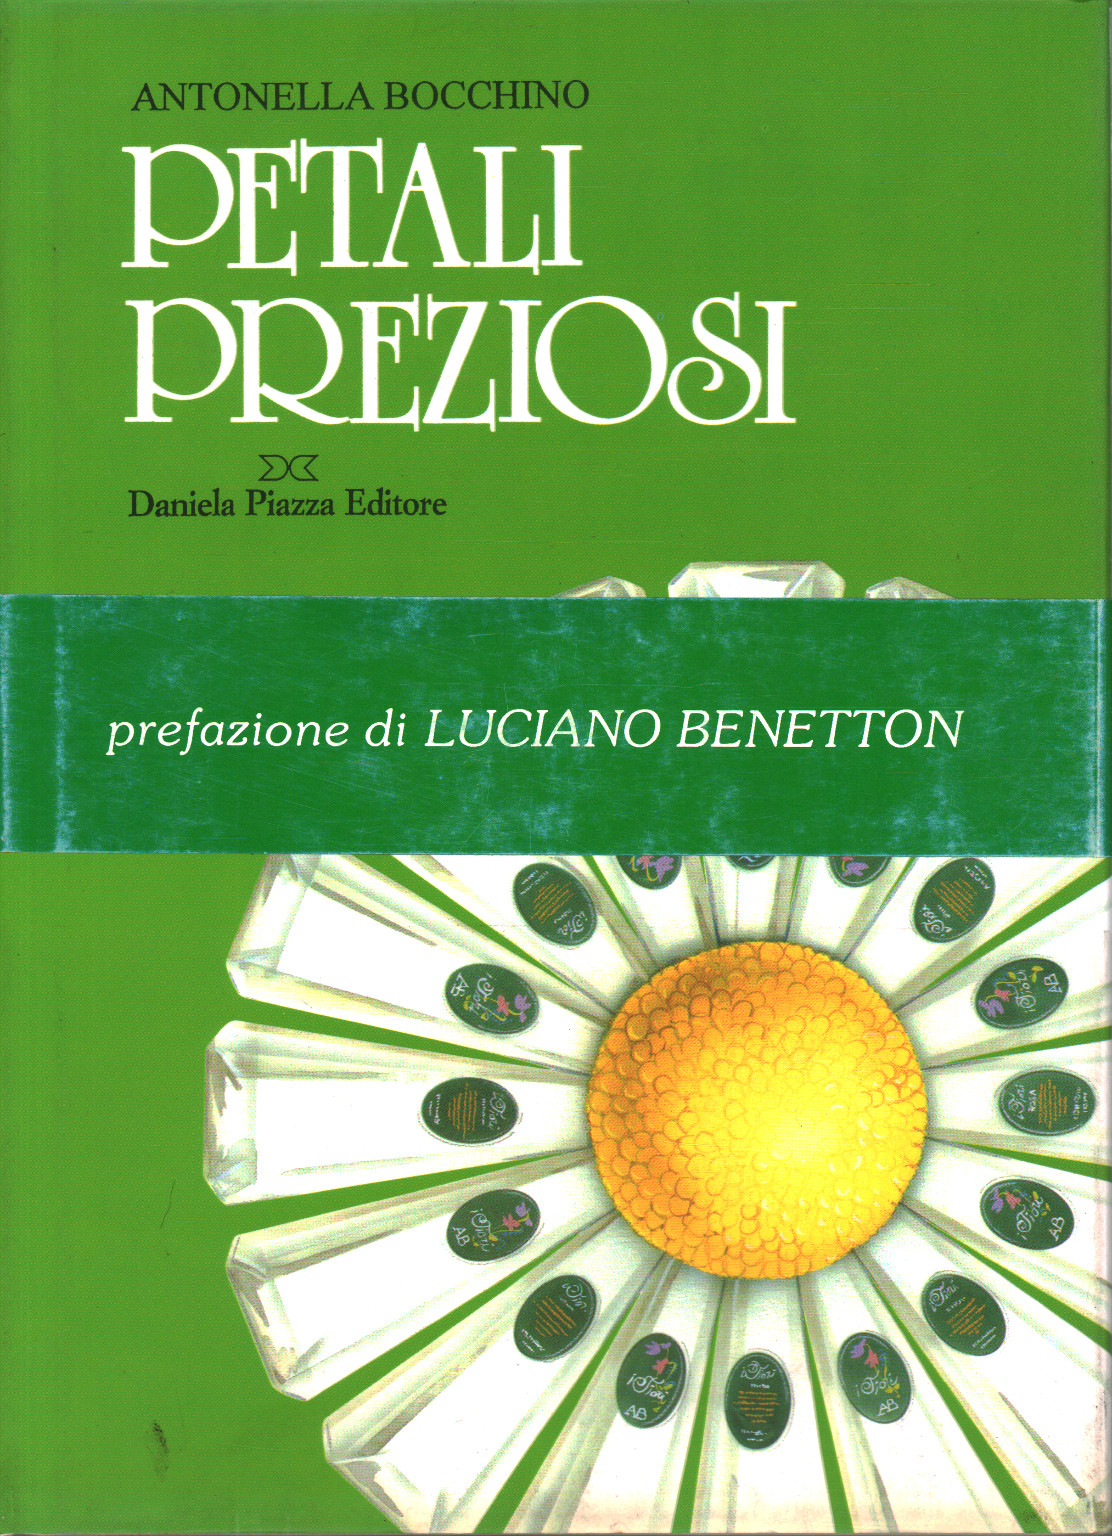 Petali Preziosi, s.a.